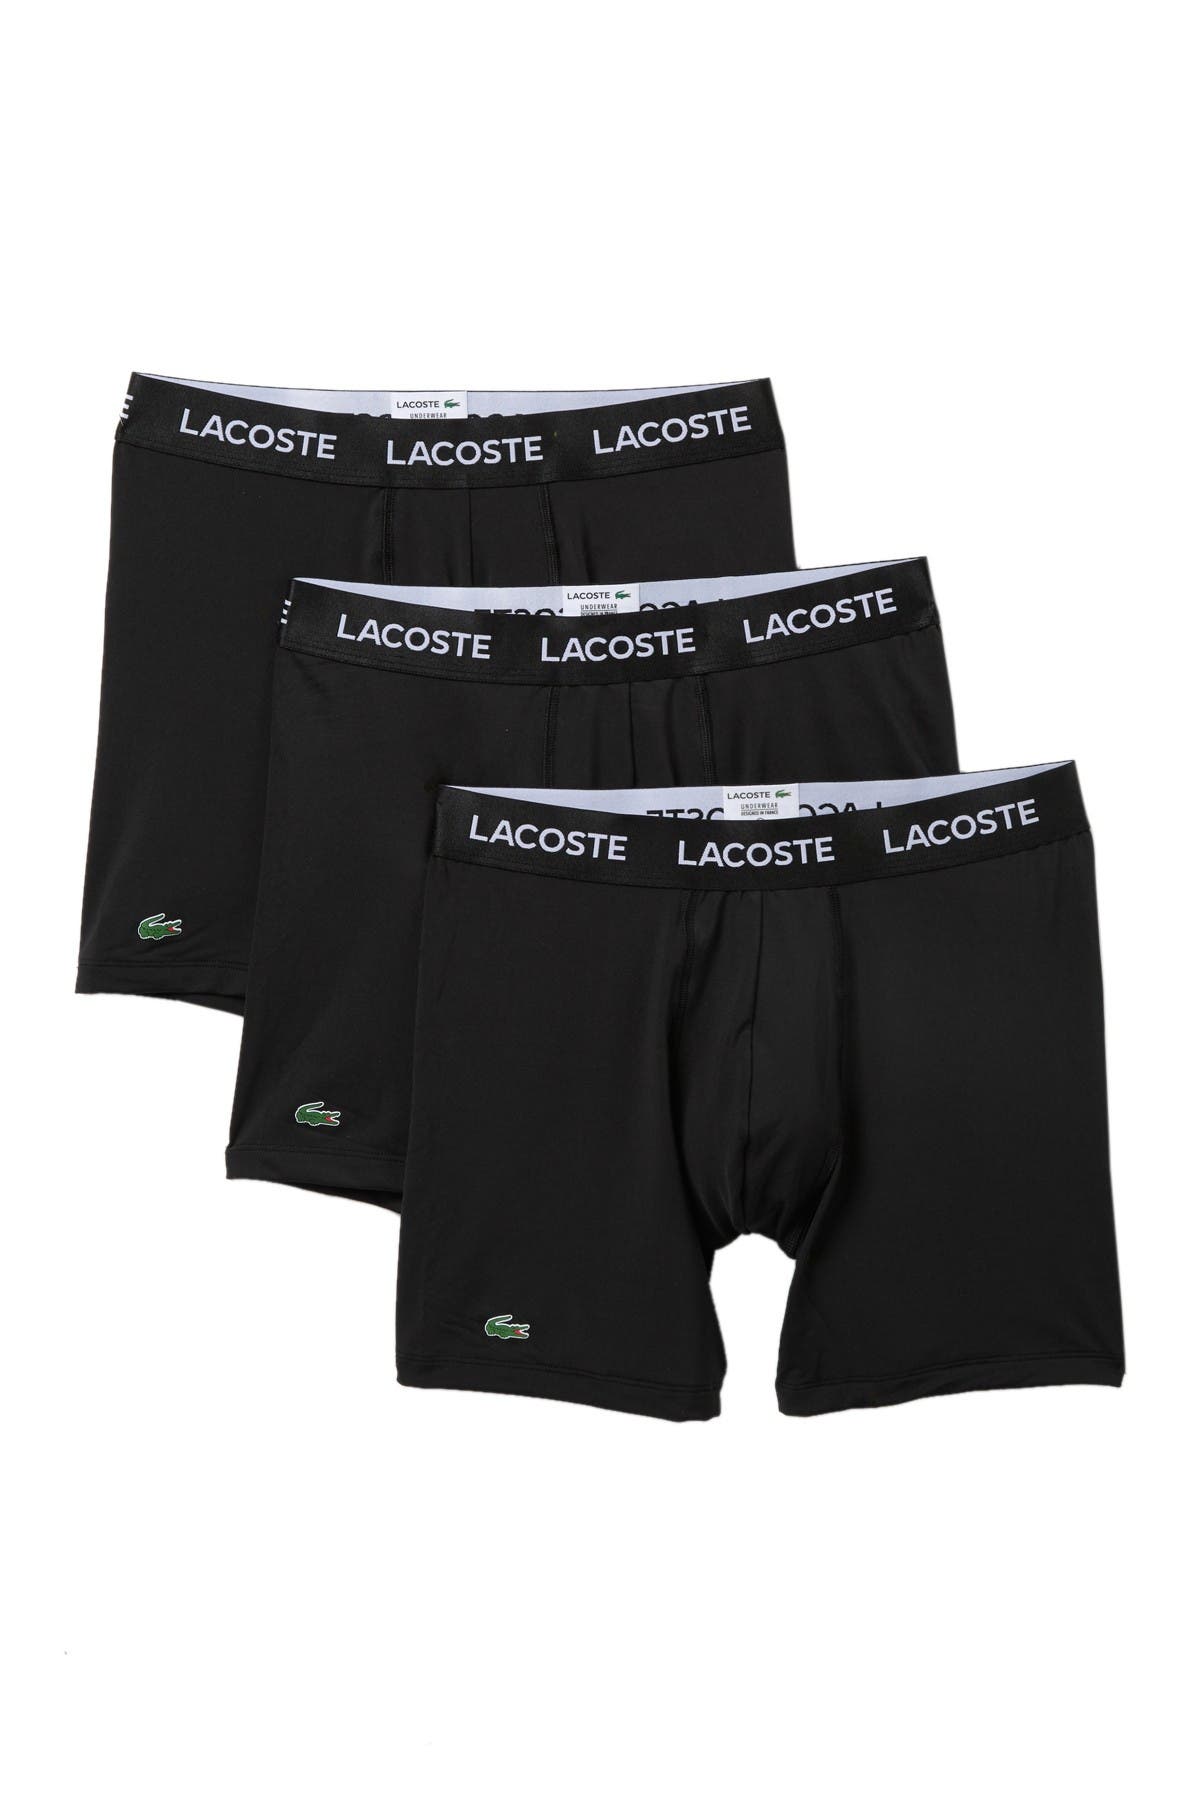 lacoste underwear briefs